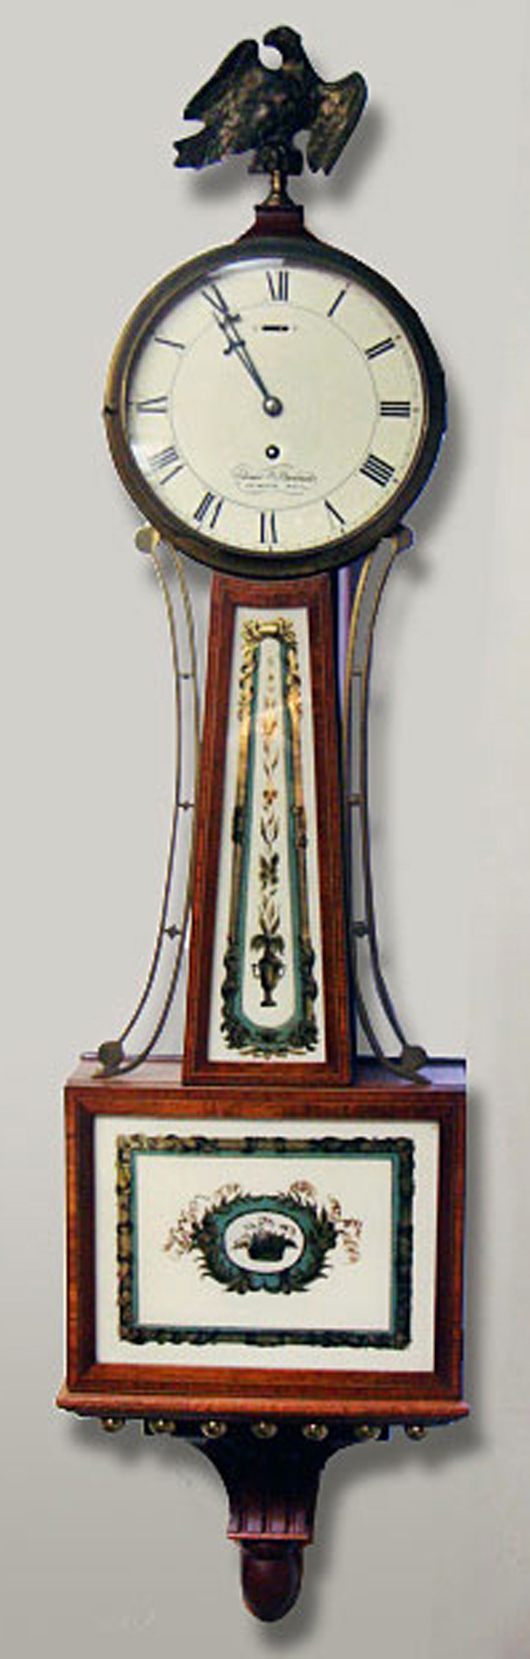 Antique clocks included this circa-1856 Elmer Stennis banjo clock with original glasses, $2,012. Image courtesy Tim's, Inc.